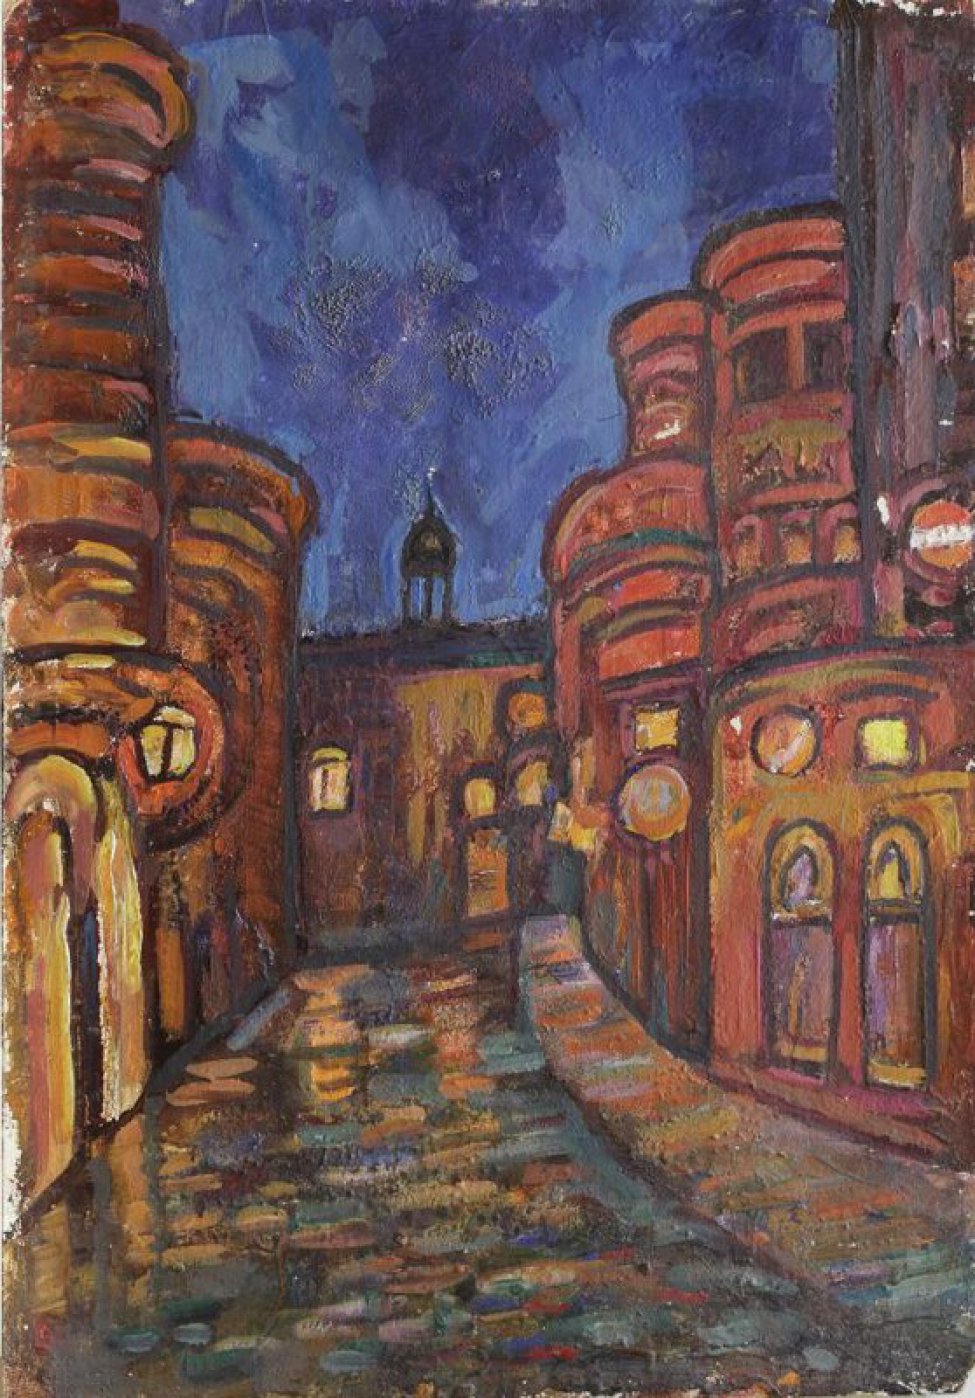 Изображена узкая городская улица с каменными домами красно-коричневого цвета слева и справа, имеющие овальные формы в силуэте, с желтым светом в окнах. В центре, между домами, на фоне темно-синего неба невысокое здание с окном, на крыше маленький купол.